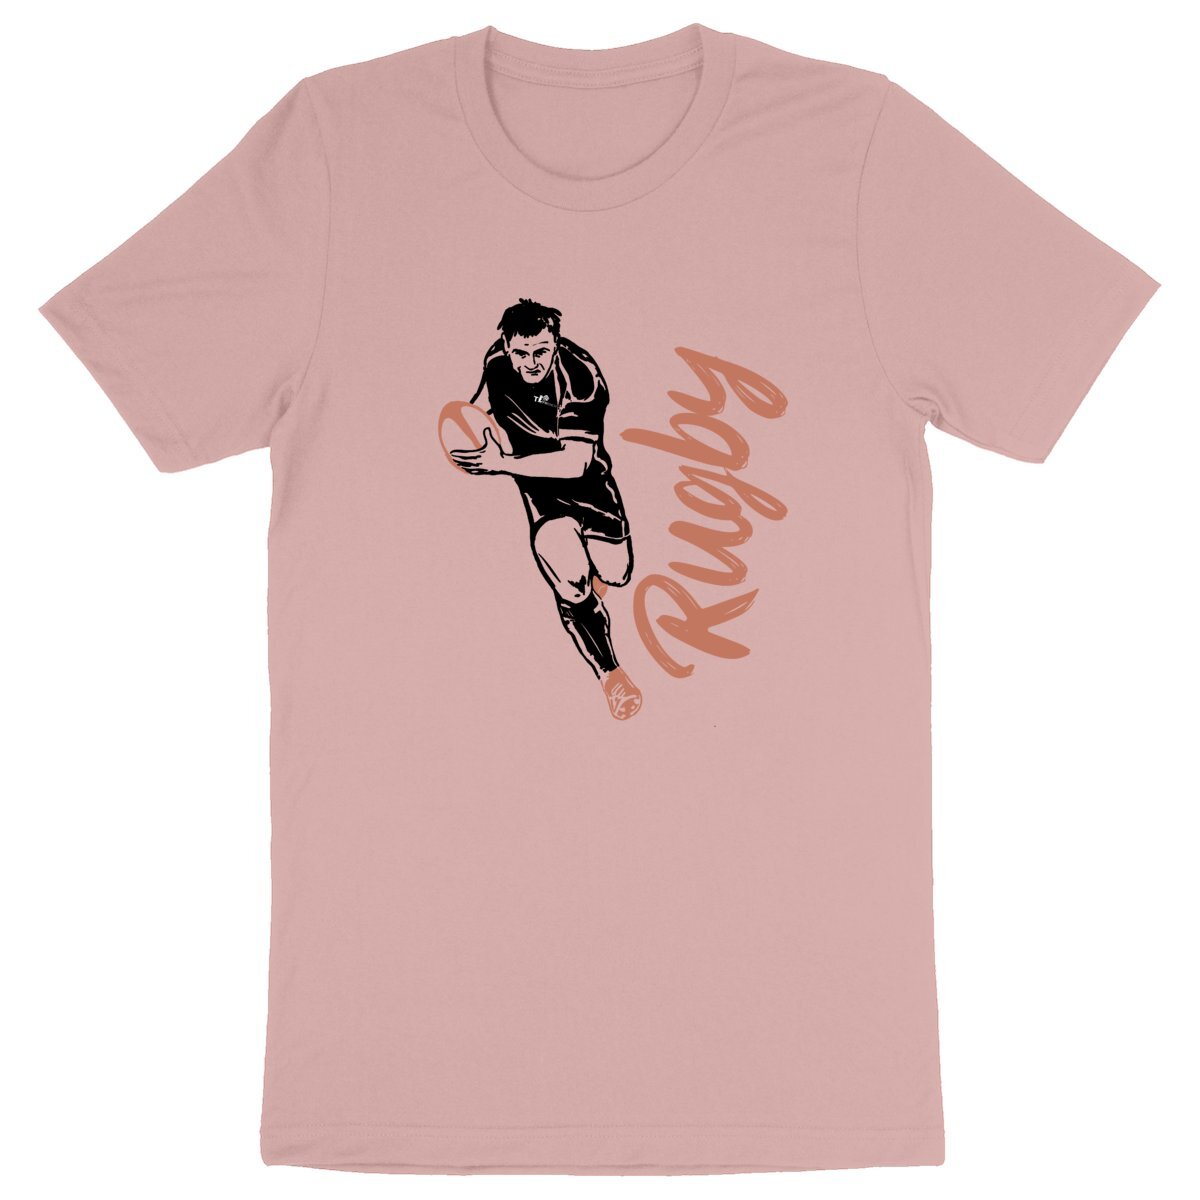 T-Shirt Homme Bio - Sport Rugby rose, T-shirt en coton bio rugby sport de t-french, t-shirt sport rugby, t-shirt homme rugby, t-shirt de rugby, t-shirt coupe du monde de rugby, tee shirt ballon rond, t-shirt ballon rond, t-shirt en coton bio rugby